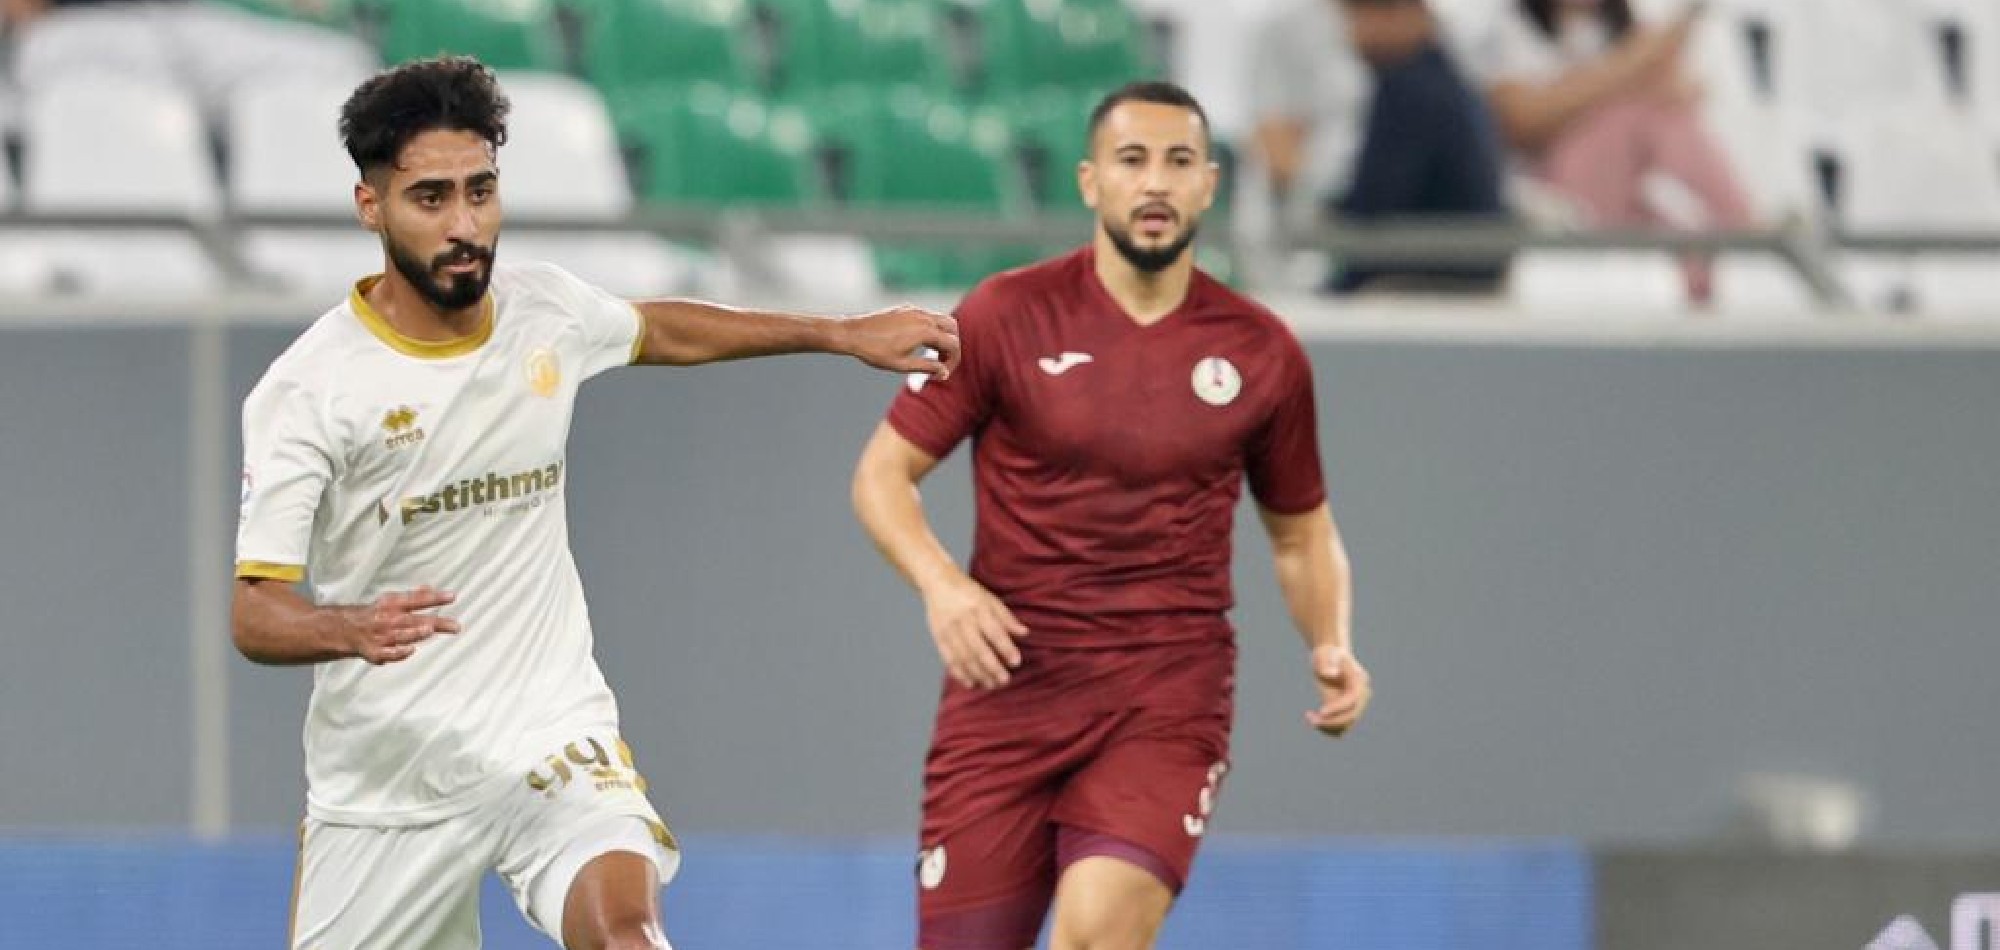 Qatar SC, Al Markhiya In 1-1 Draw In Week 2